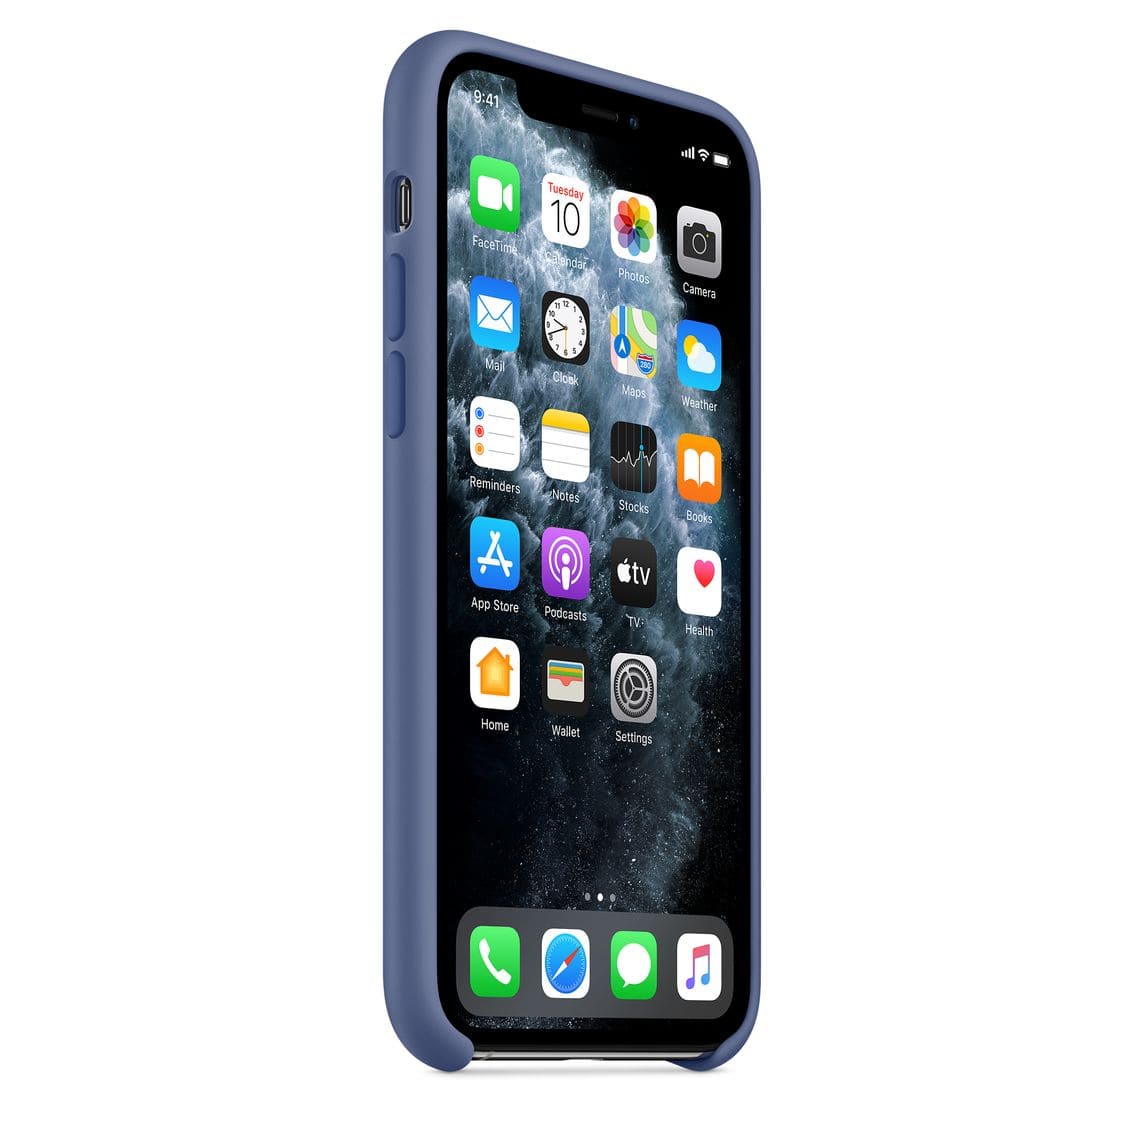 Силиконовый чехол для iPhone 11 Pro, «синий лён»